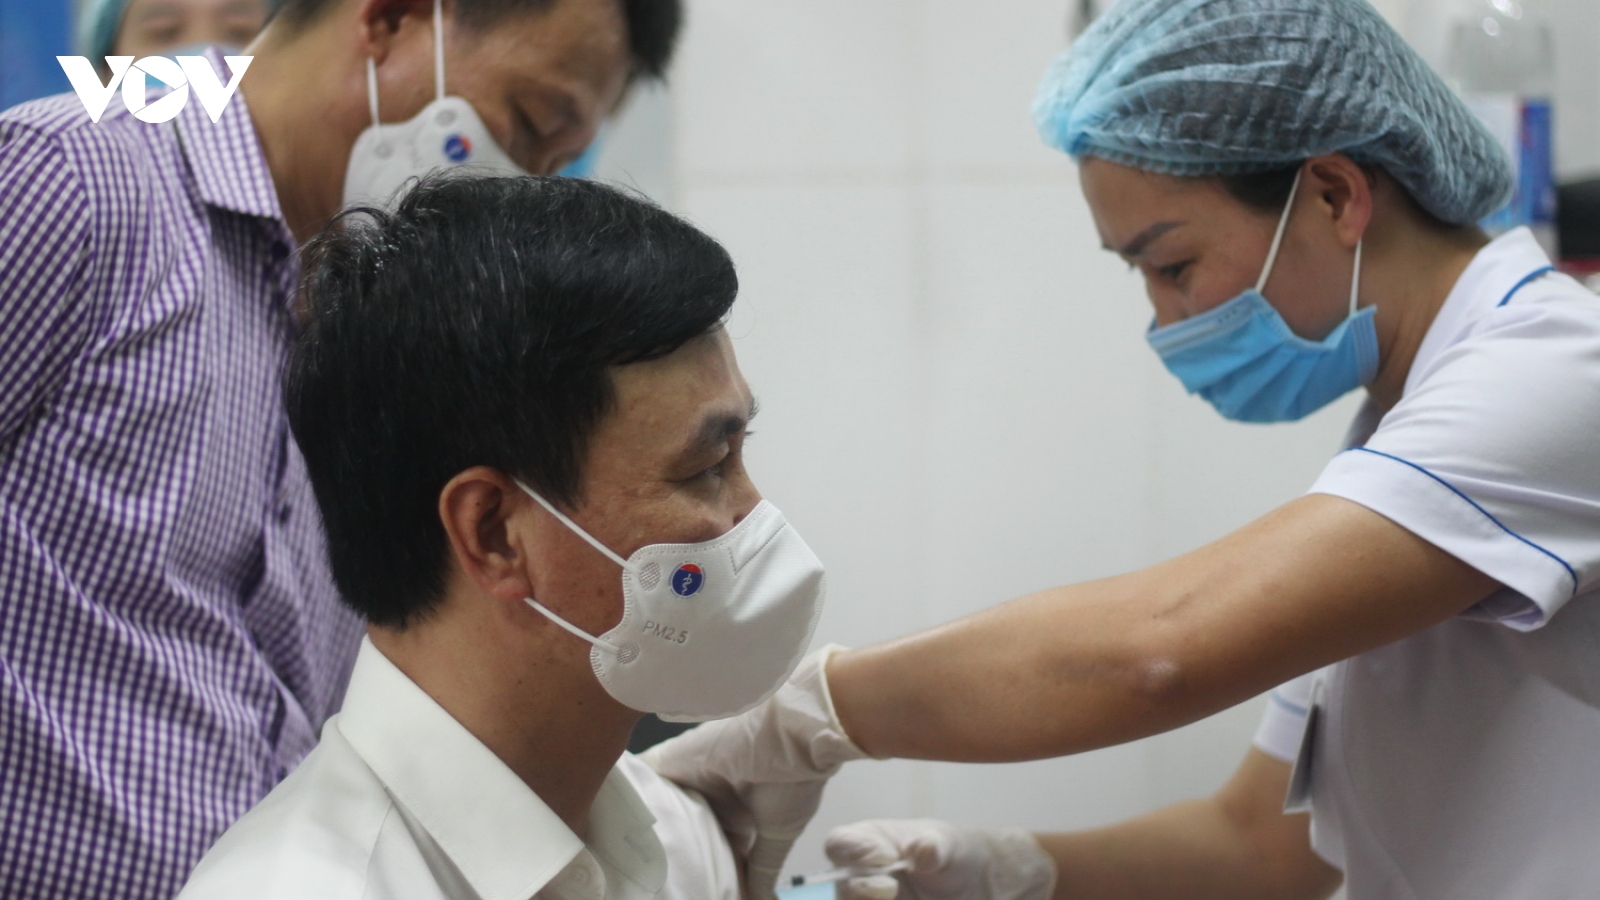 Quảng Bình, Đà Nẵng và Bến Tre bắt đầu tiêm vaccine COVID-19 cho người dân 